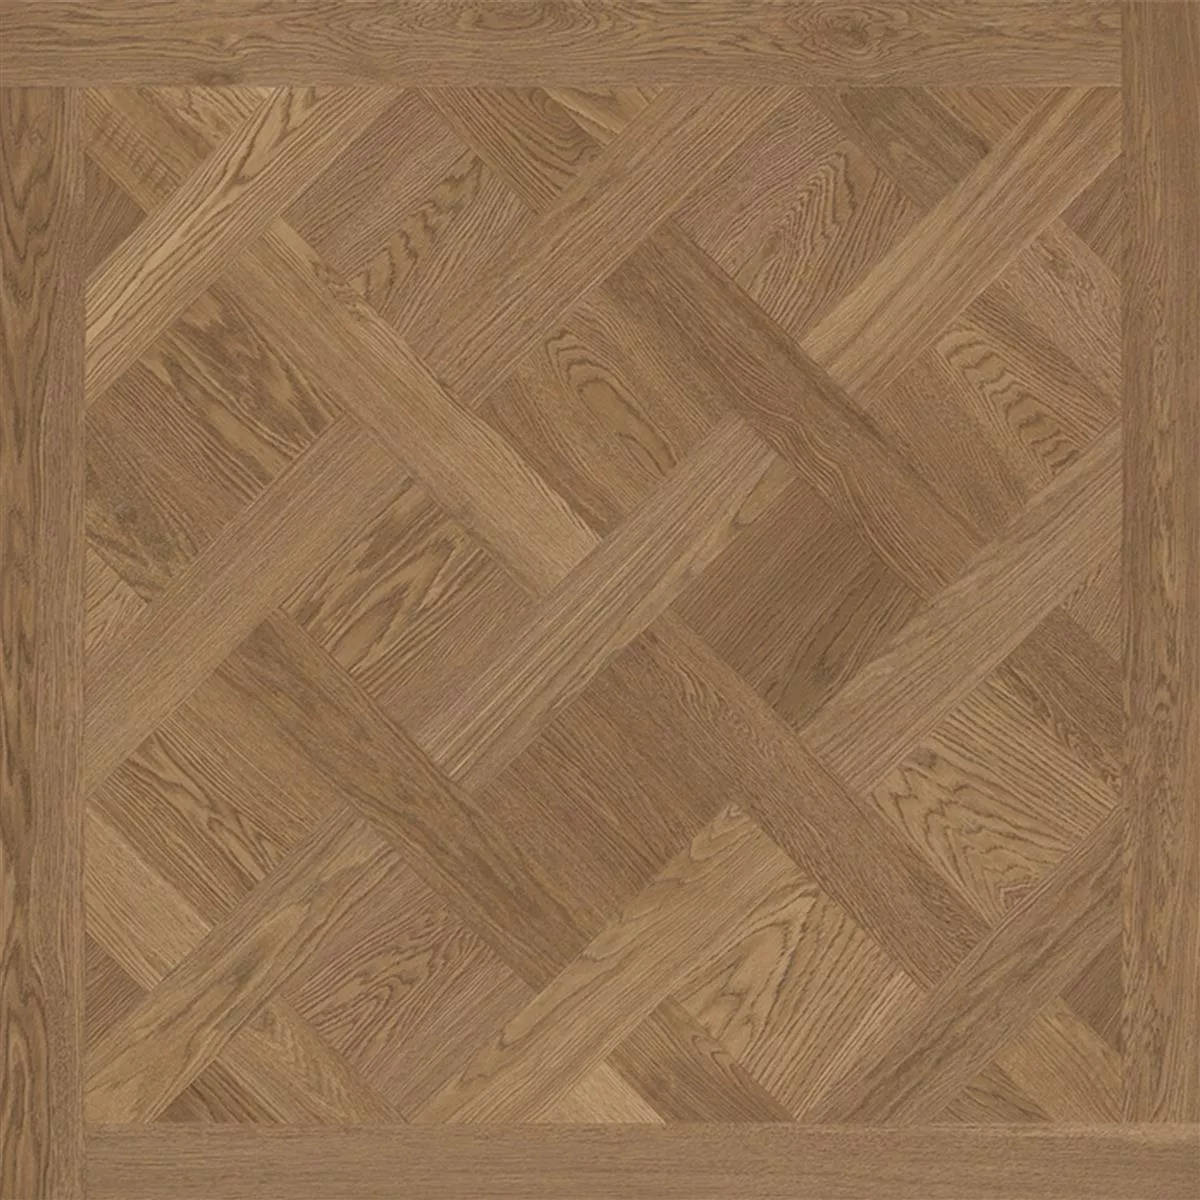 Podlahové Dlaždice Dřevěný Vzhled Lavrio Tmavě Hnědá. 120x120cm